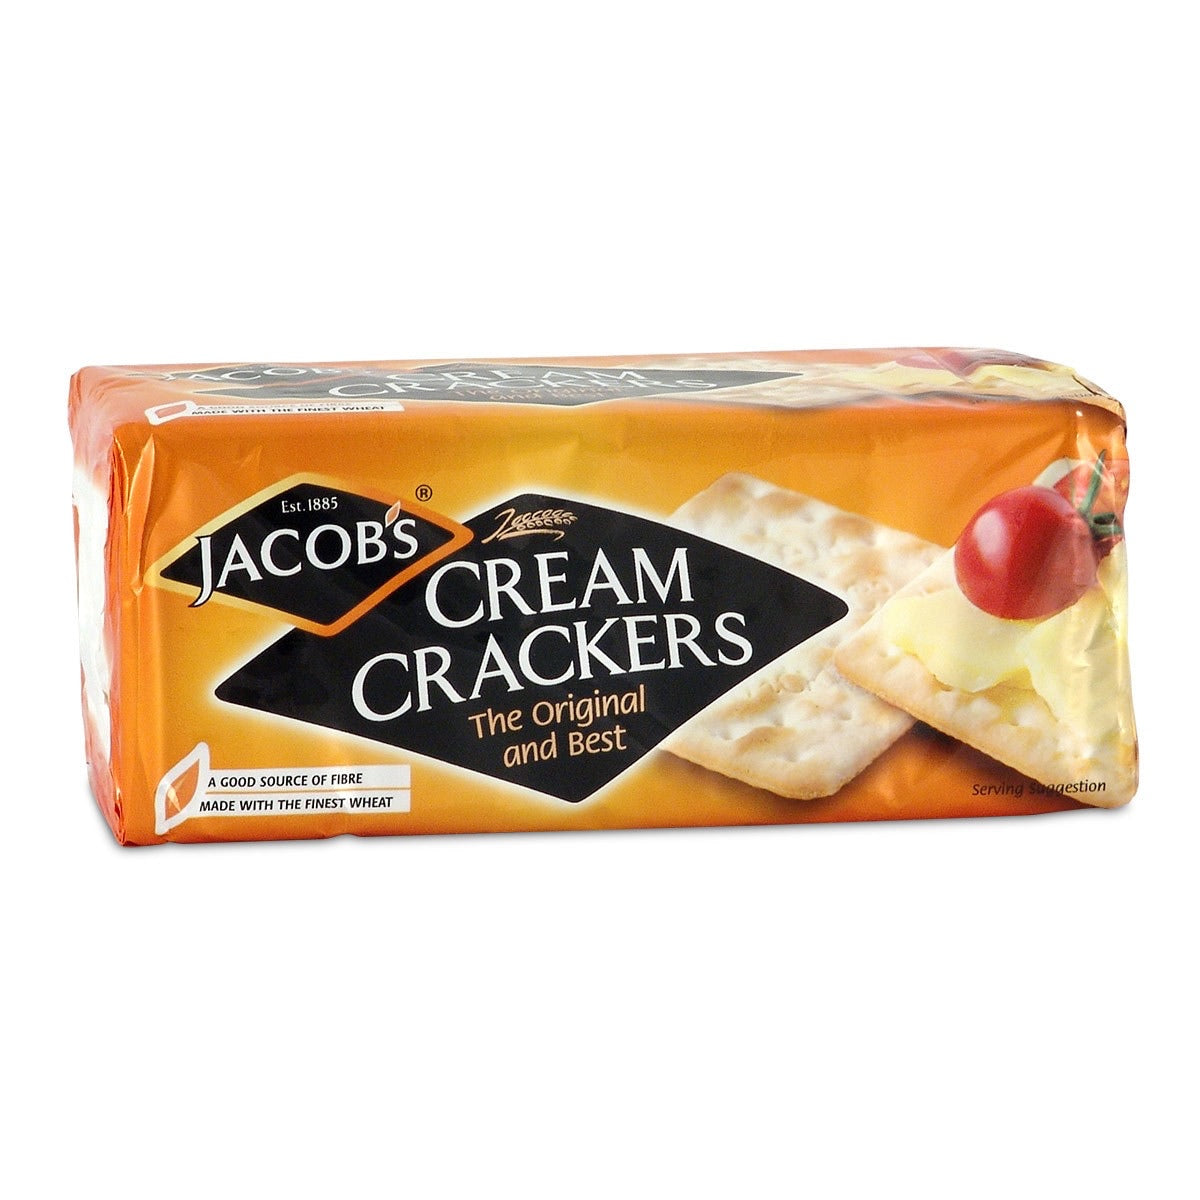 Bolands cream crackers